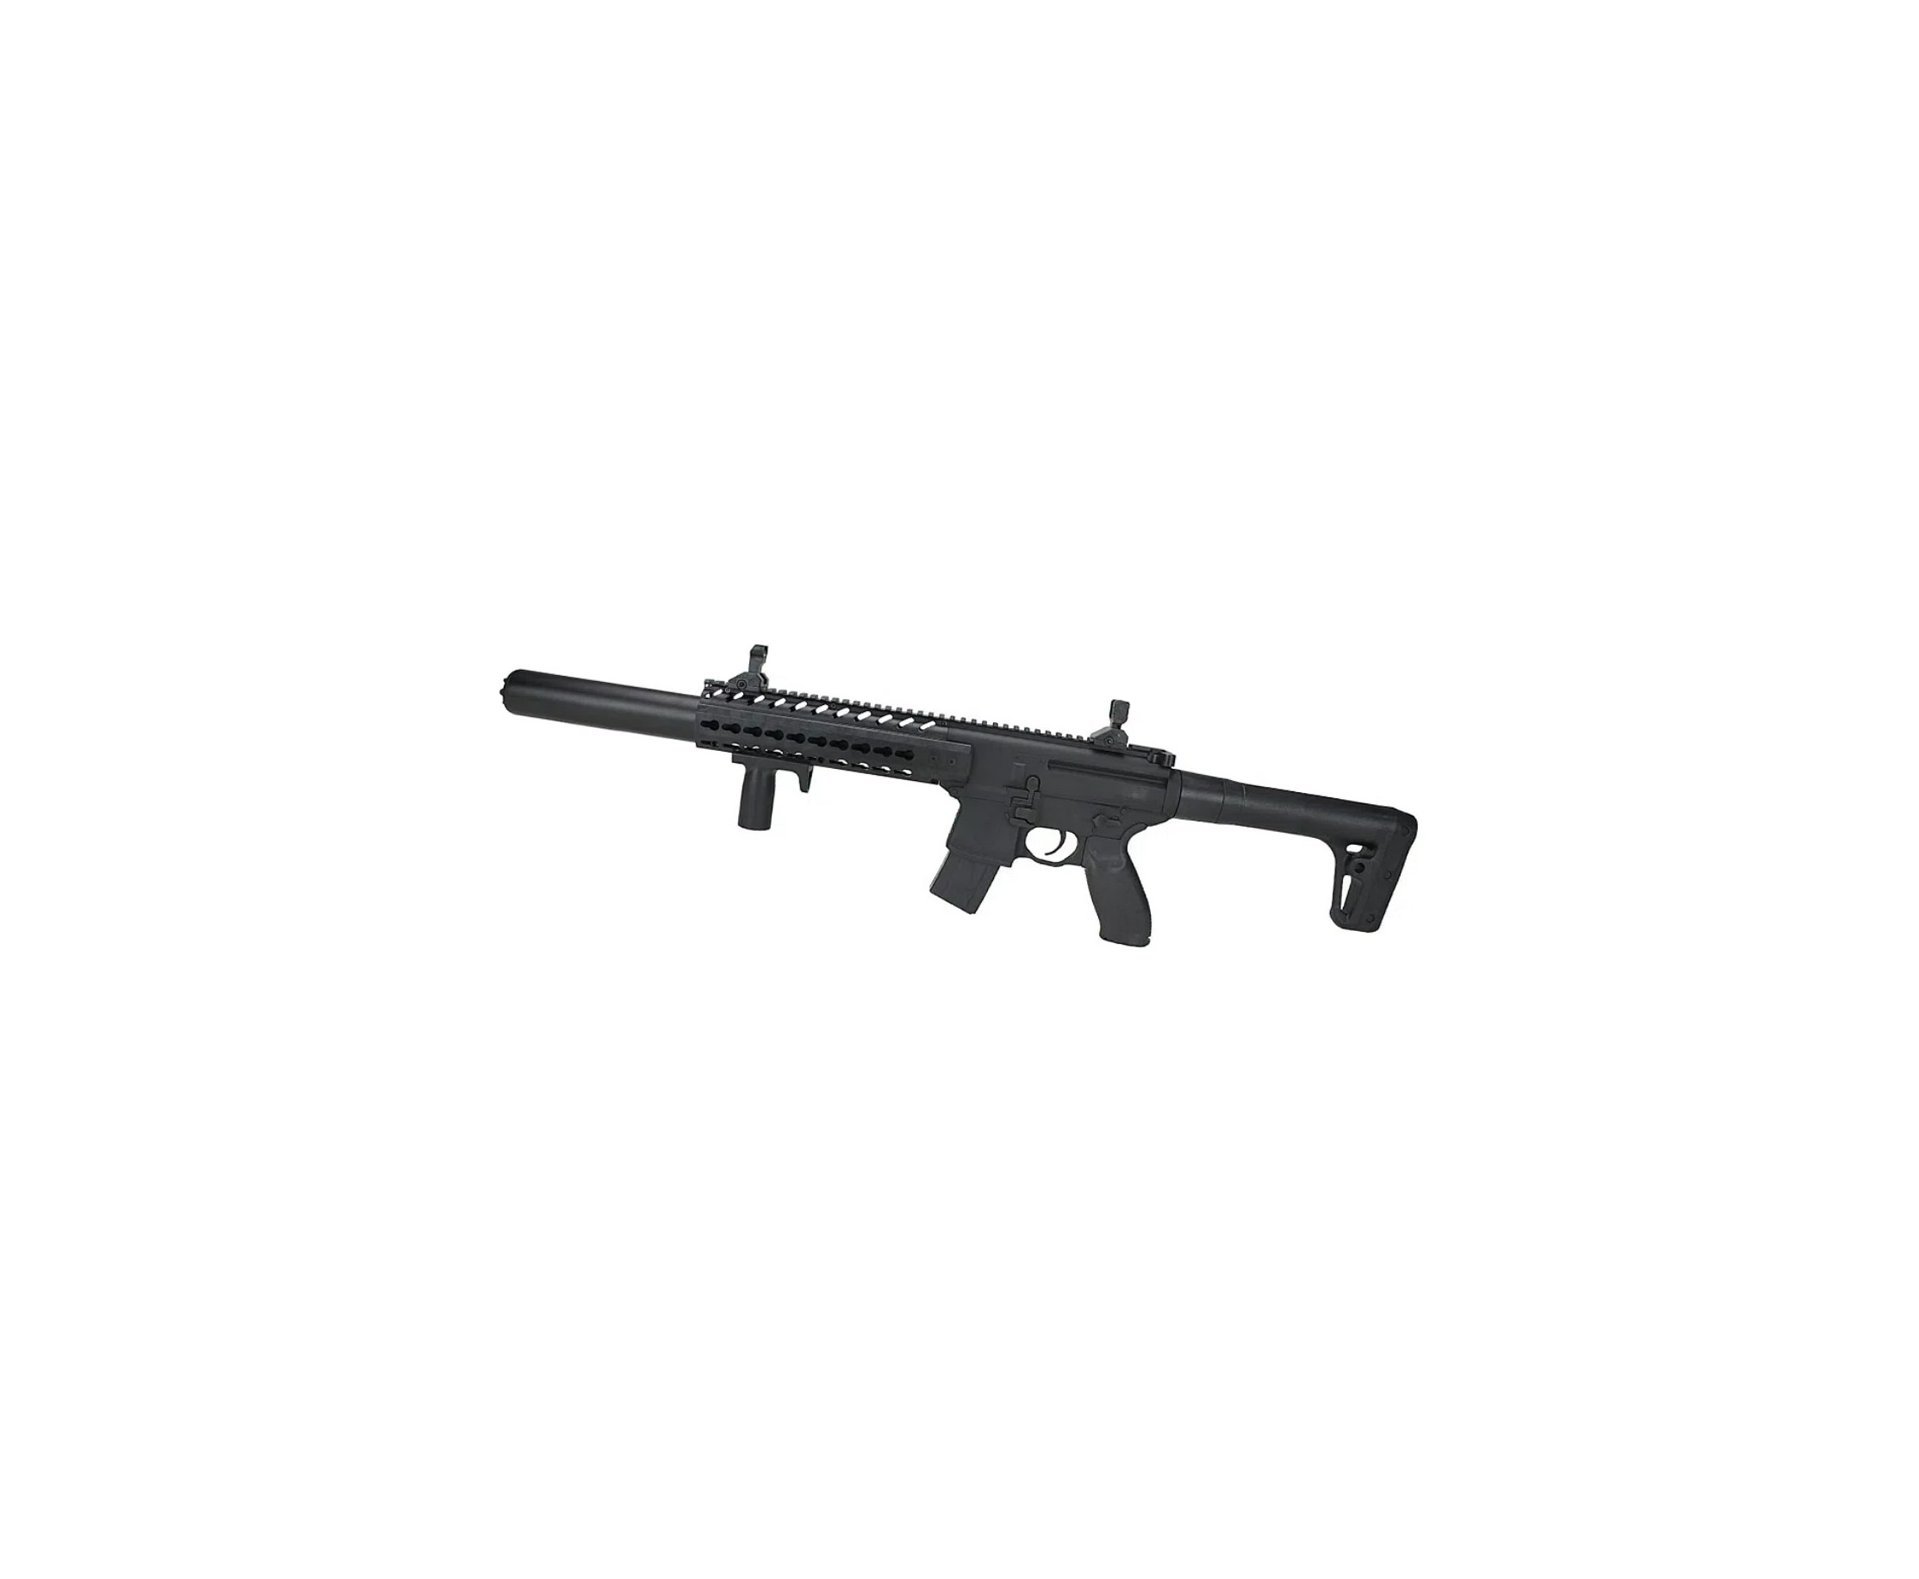 Rifle de Pressão CO2 SEMI-AUTO Sig Sauer MCX 30 BK 4,5mm Chumbinho + Case Rígido + Alvos + Chumbo + Óleo de silicone + Red dot